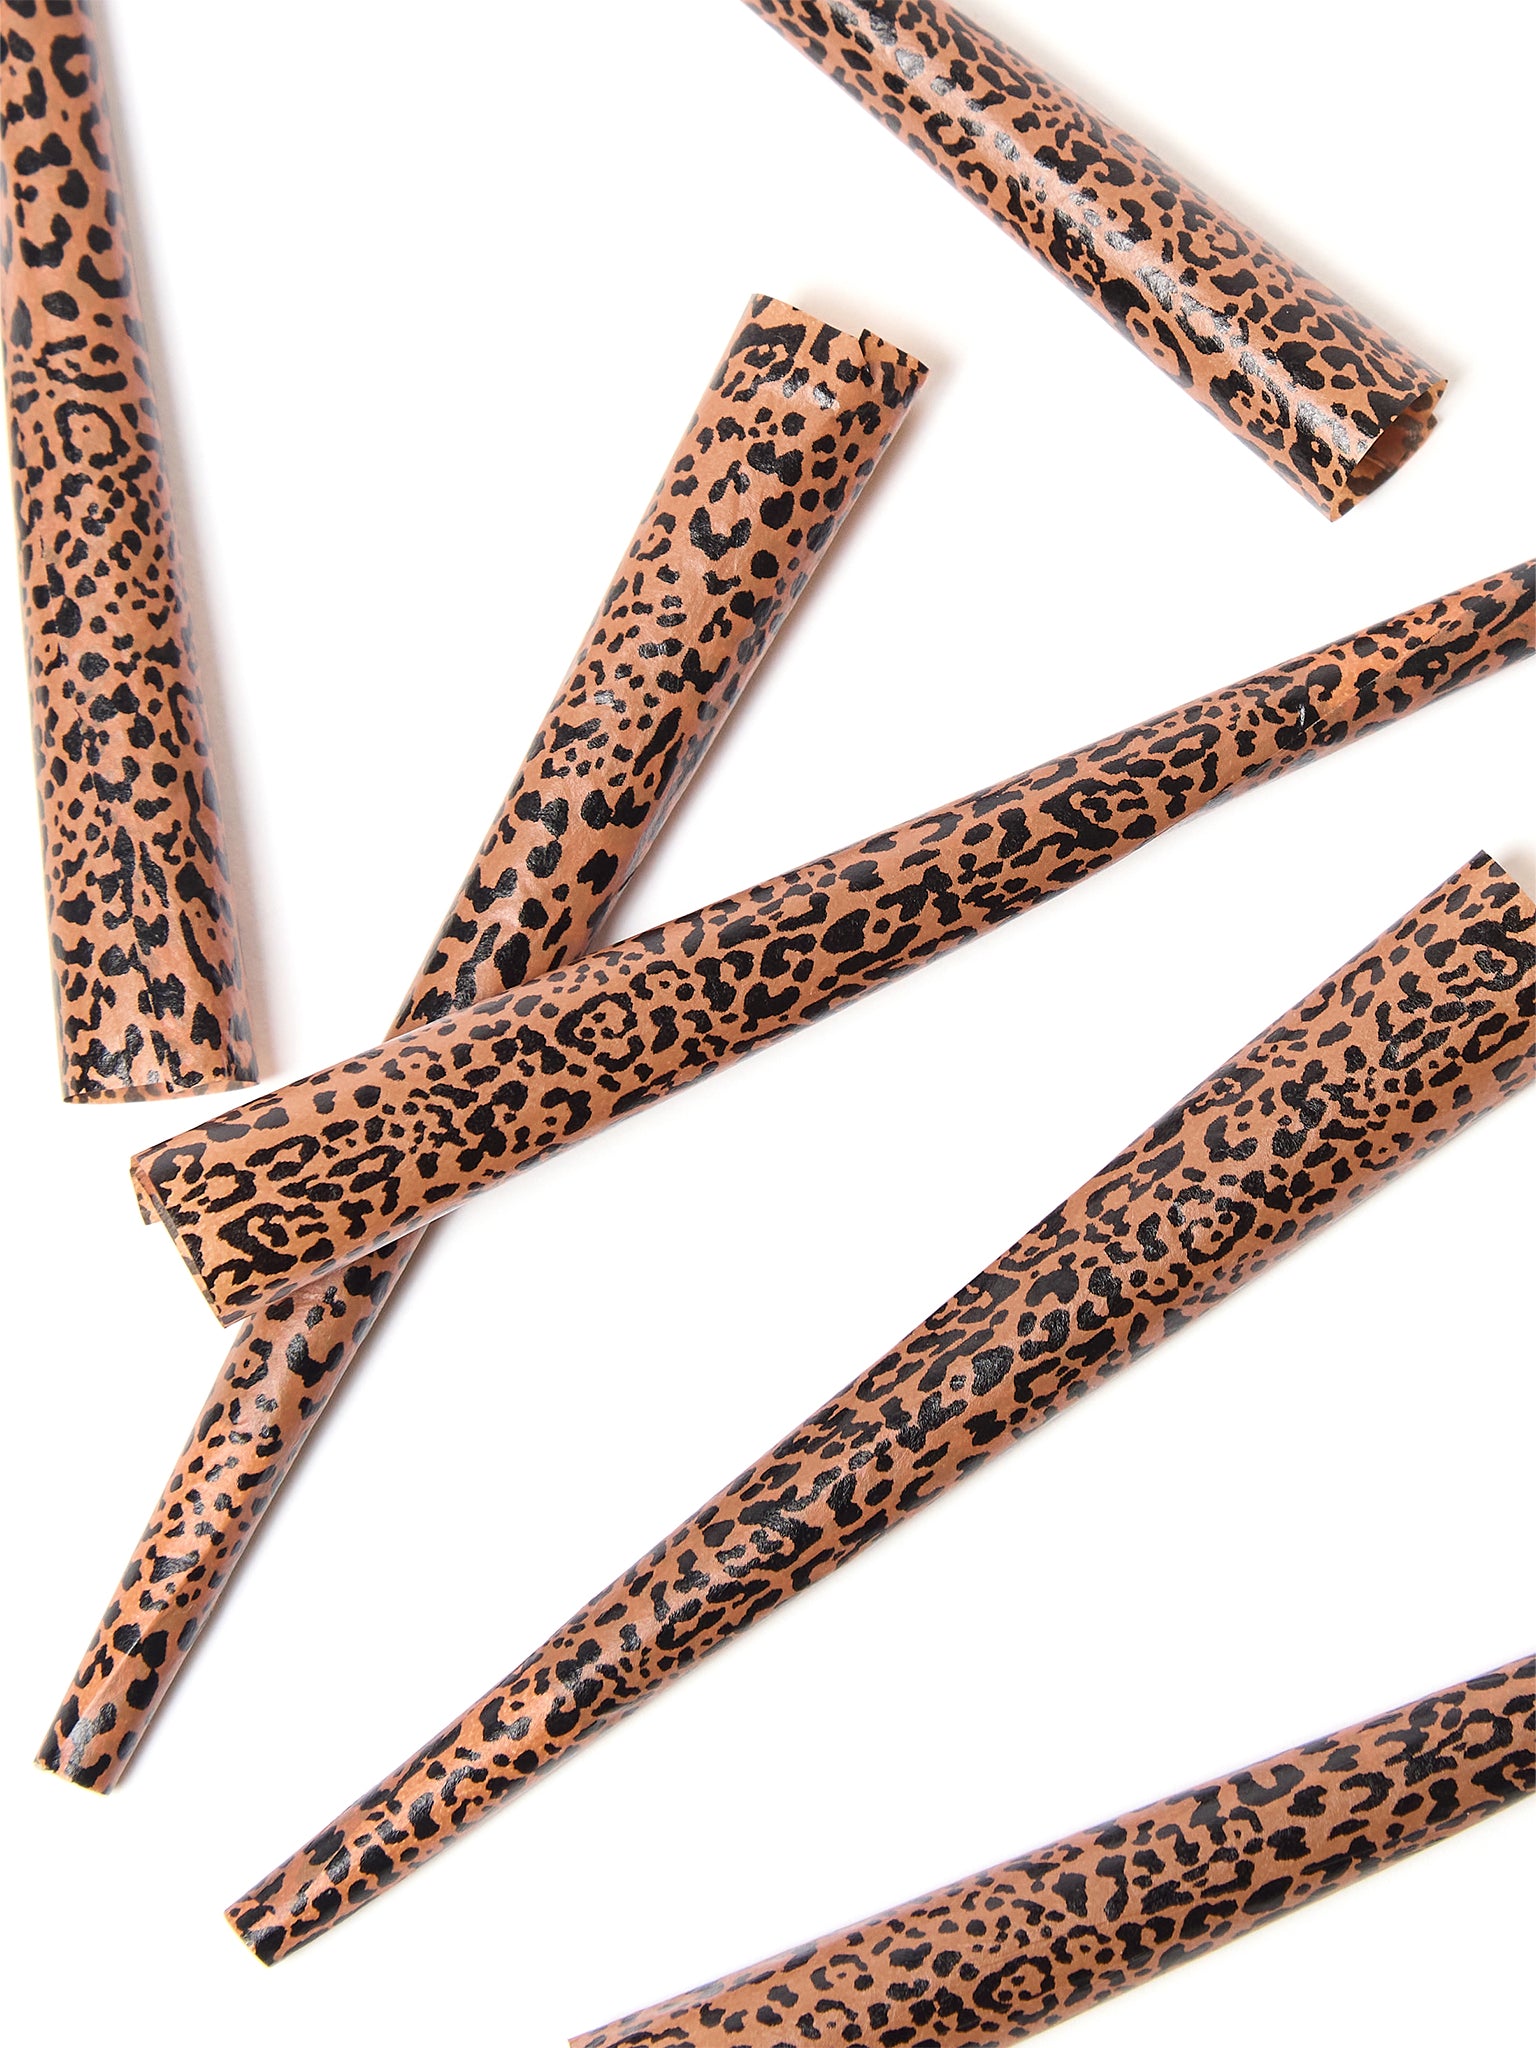 Leopard Pre-Roll Cones